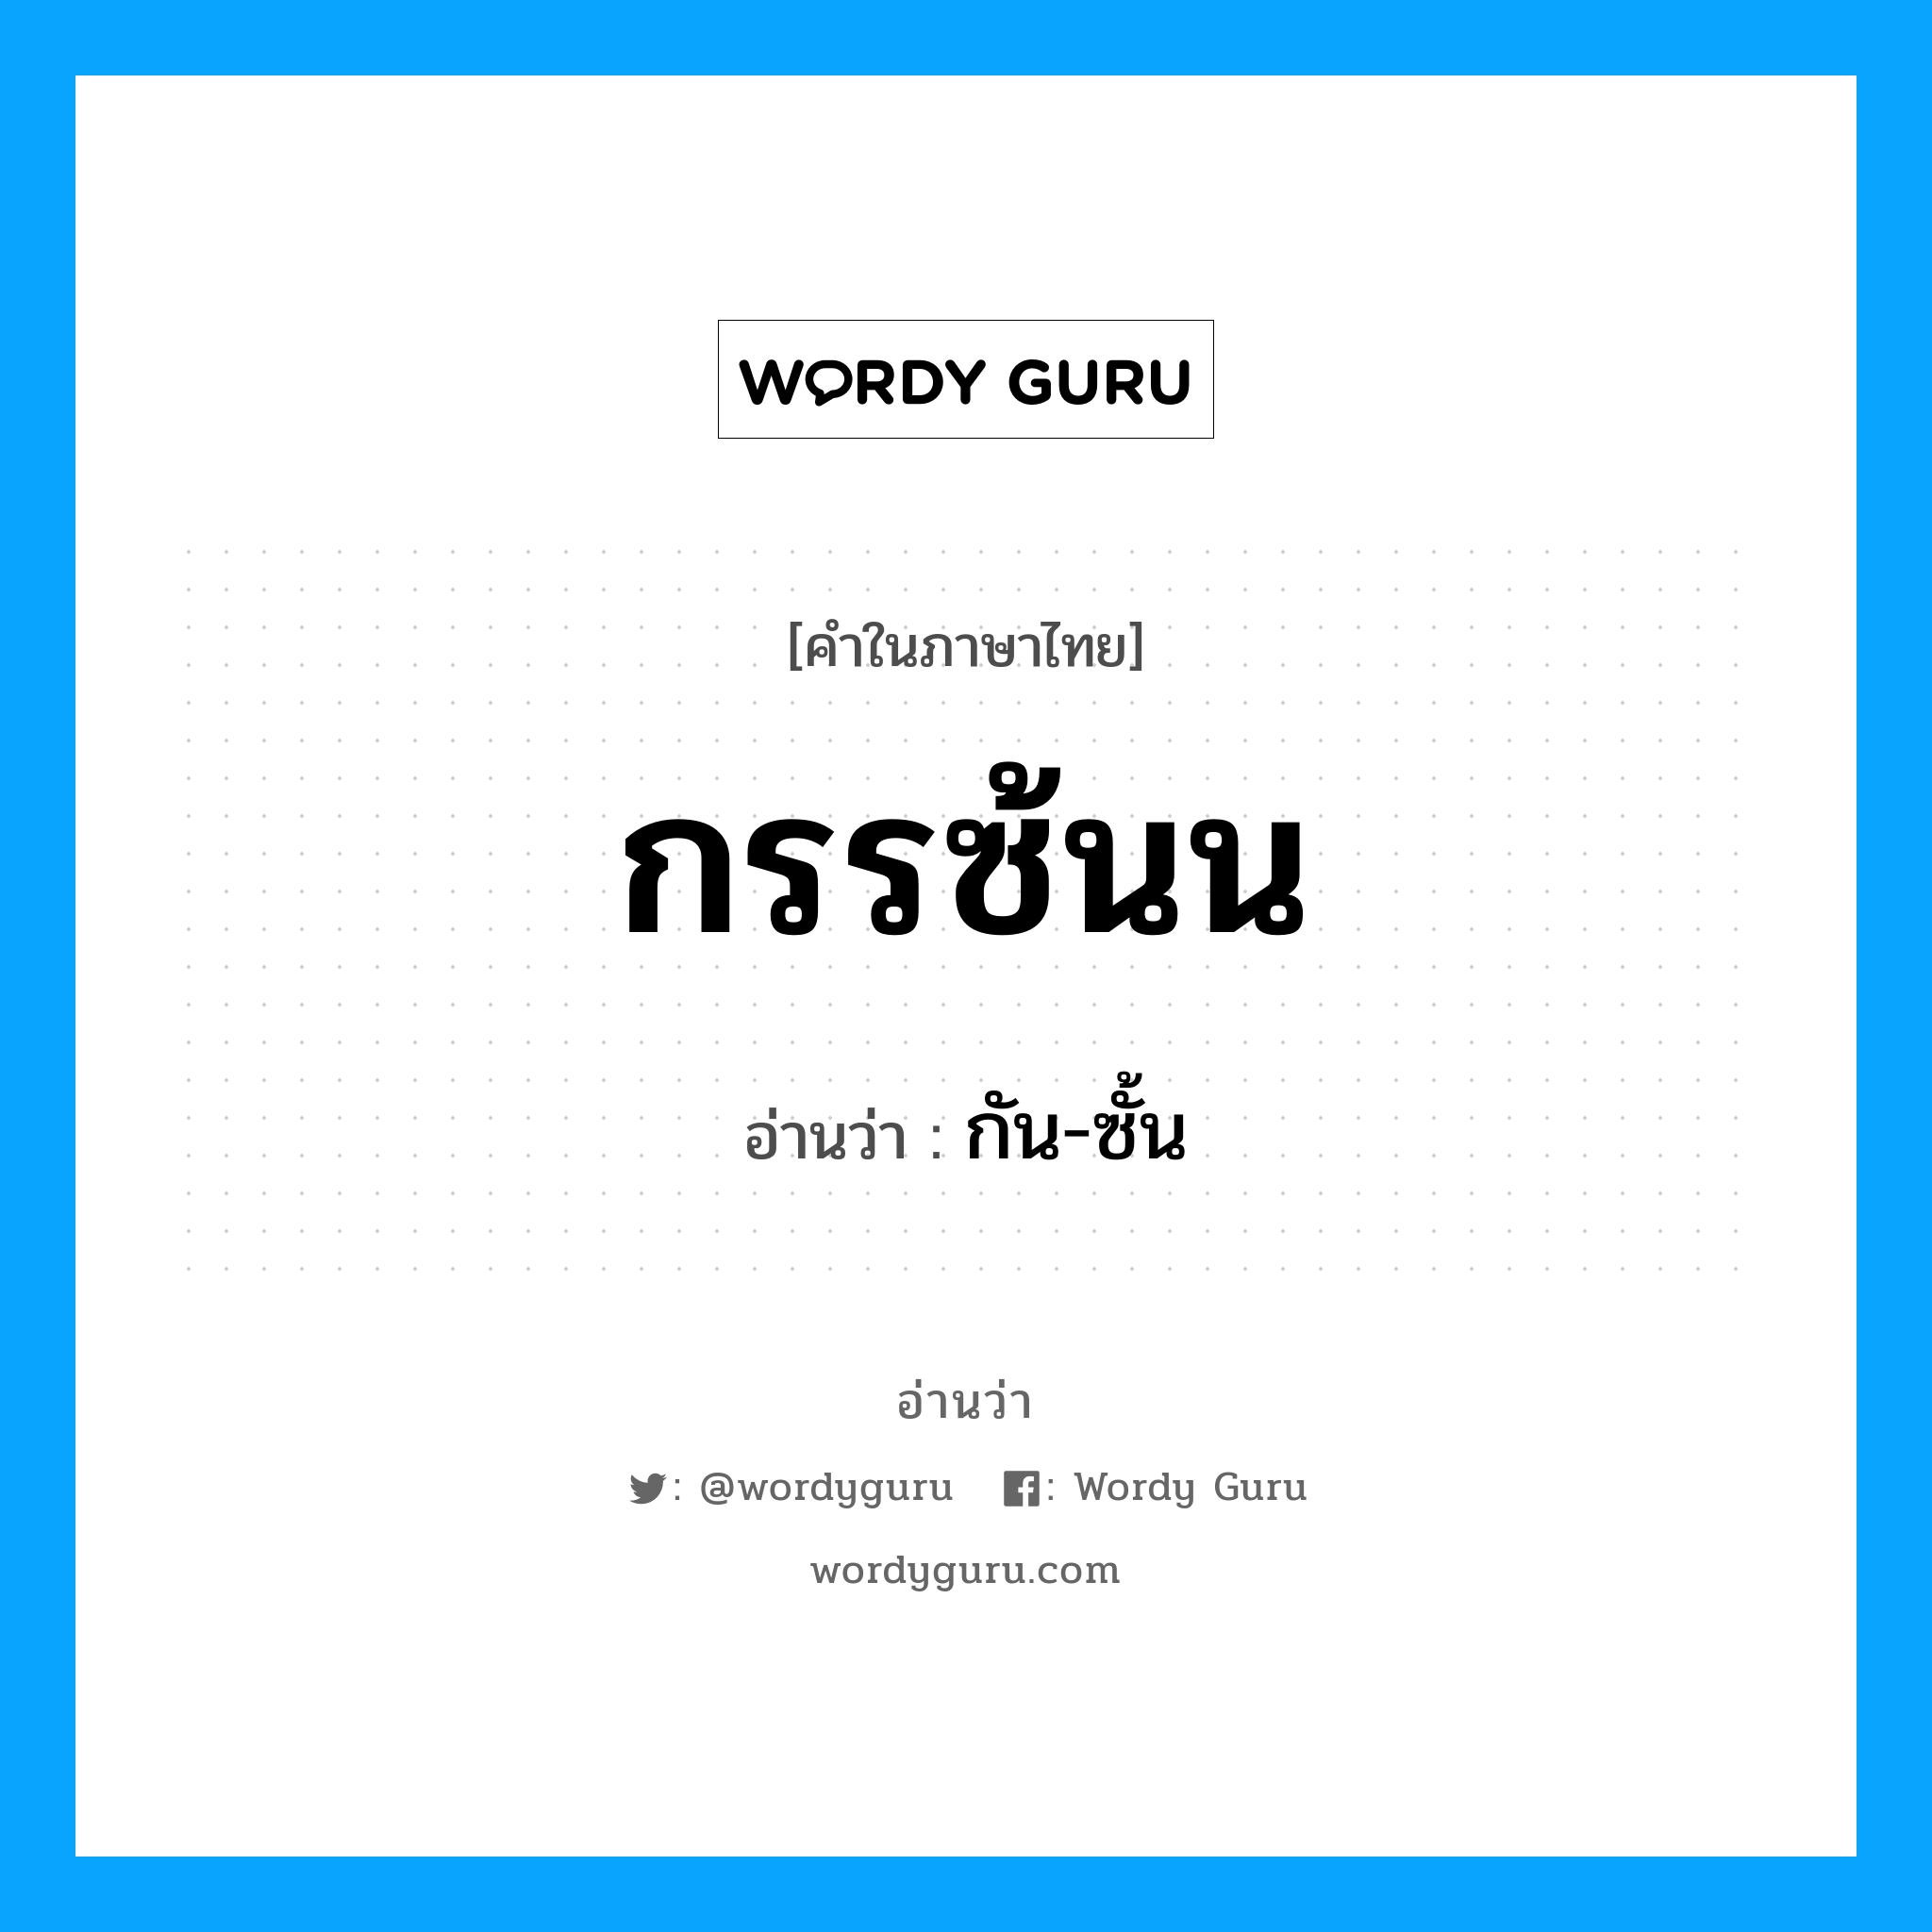 กัน-ซั้น เป็นคำอ่านของคำไหน?, คำในภาษาไทย กัน-ซั้น อ่านว่า กรรซ้นน